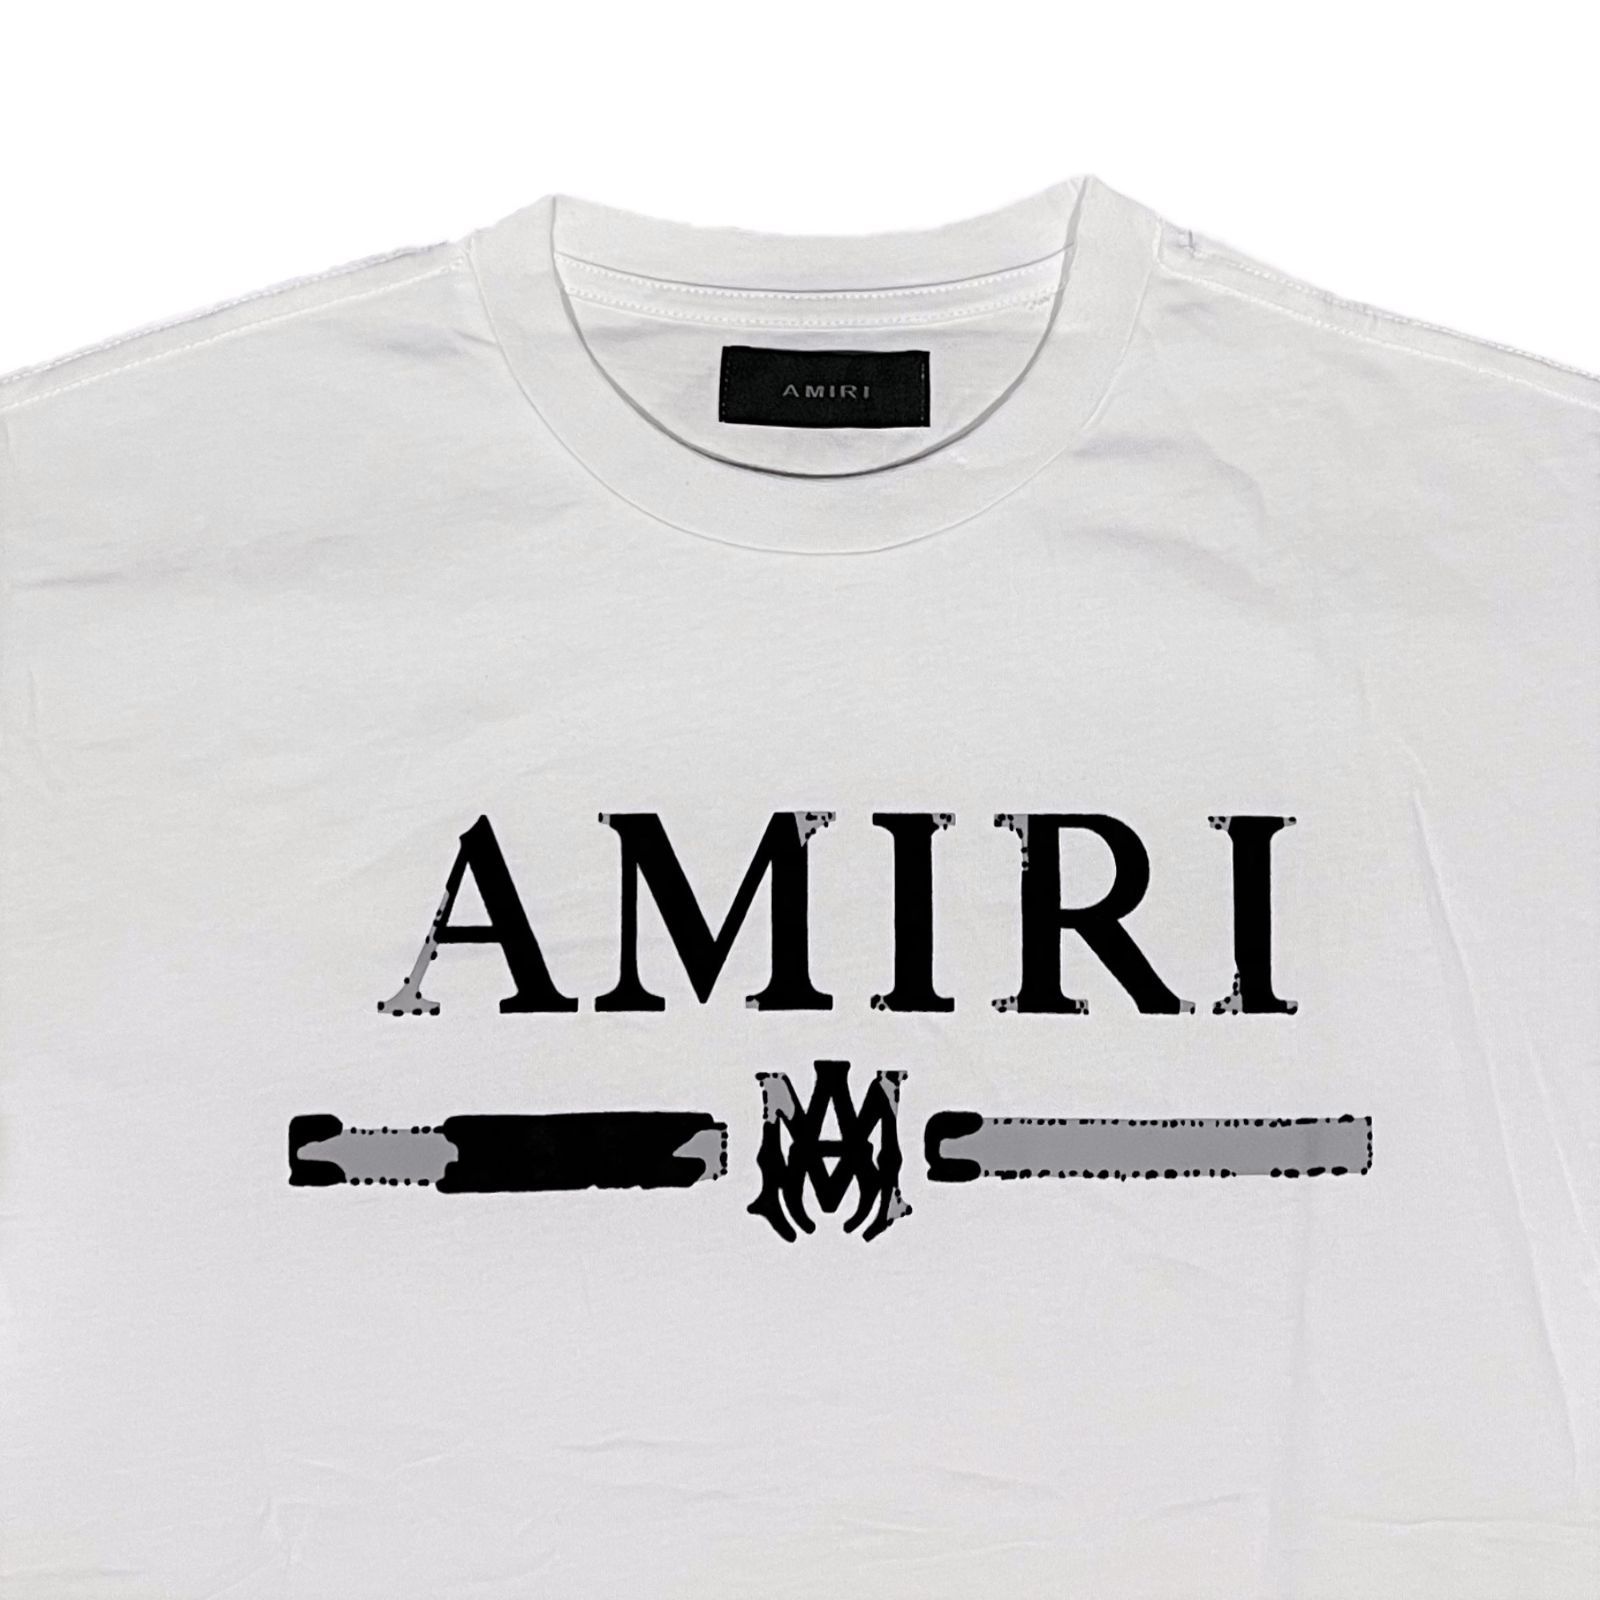 AMIRI アミリ M.A. Bar Appliqué Tシャツ ホワイト